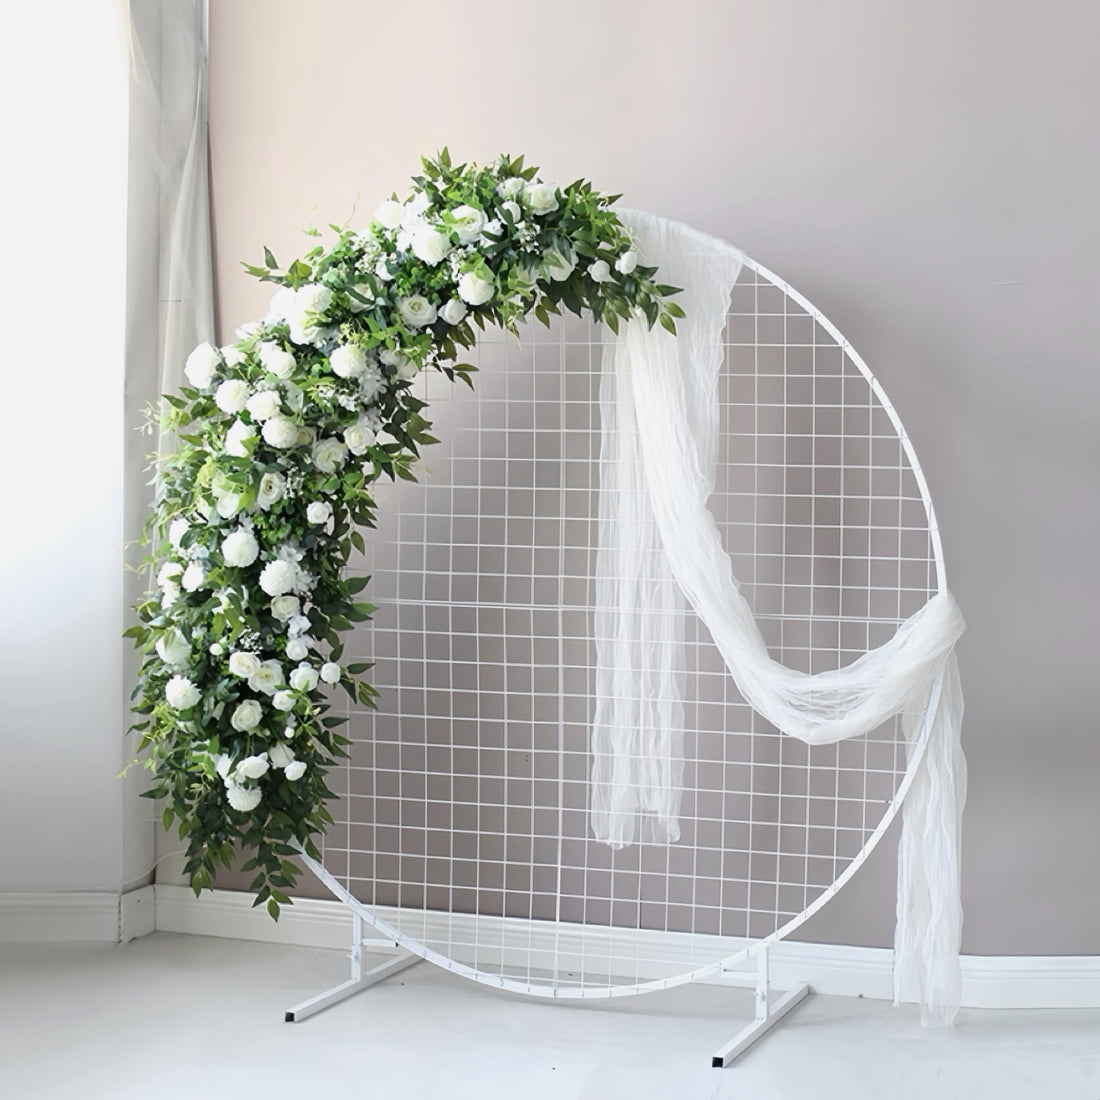 White wonderland faux floral arrangement